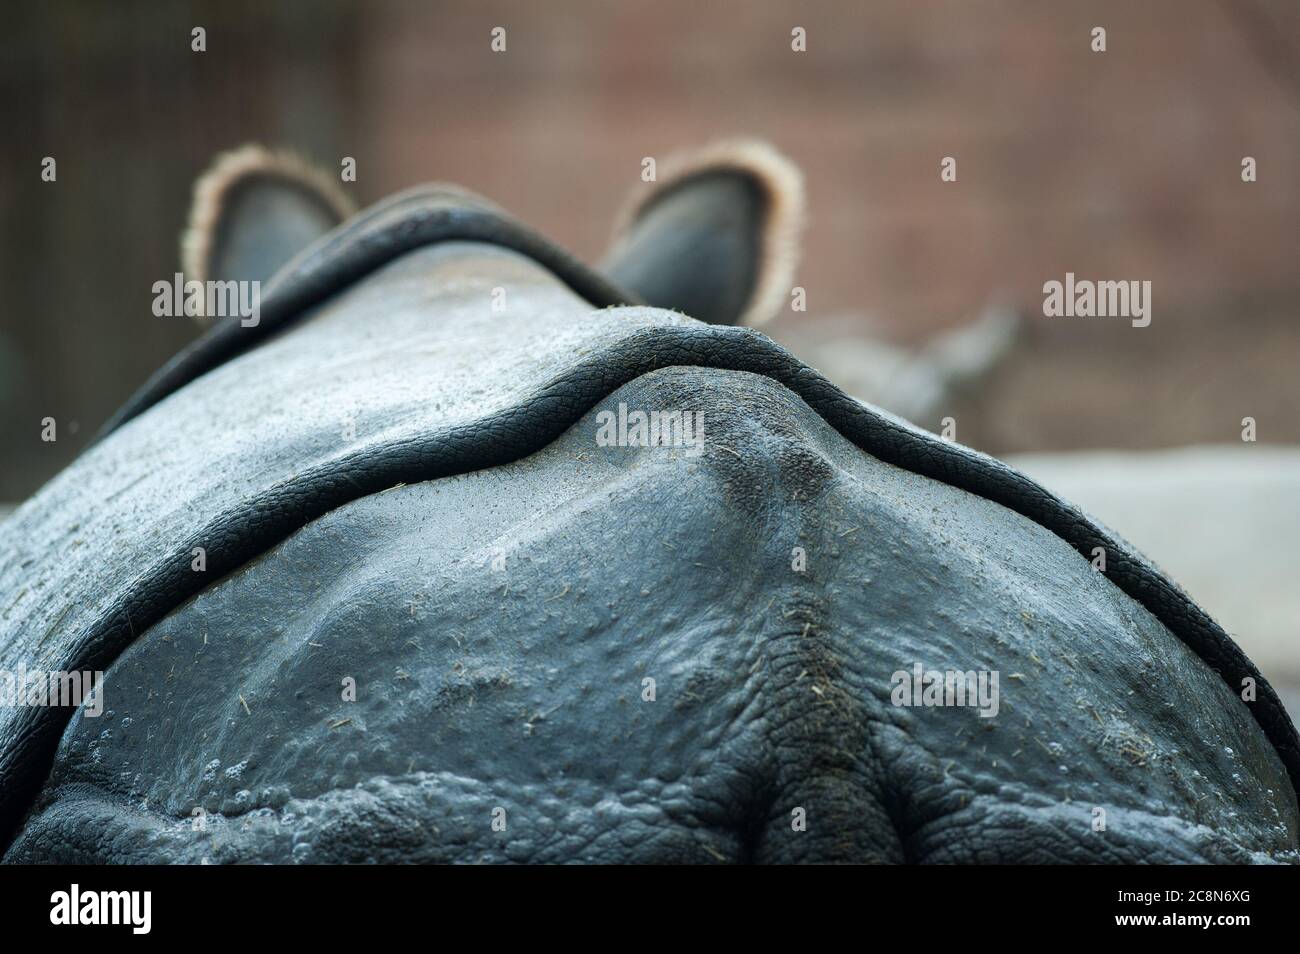 Rhino back closeup in water Stock Photo